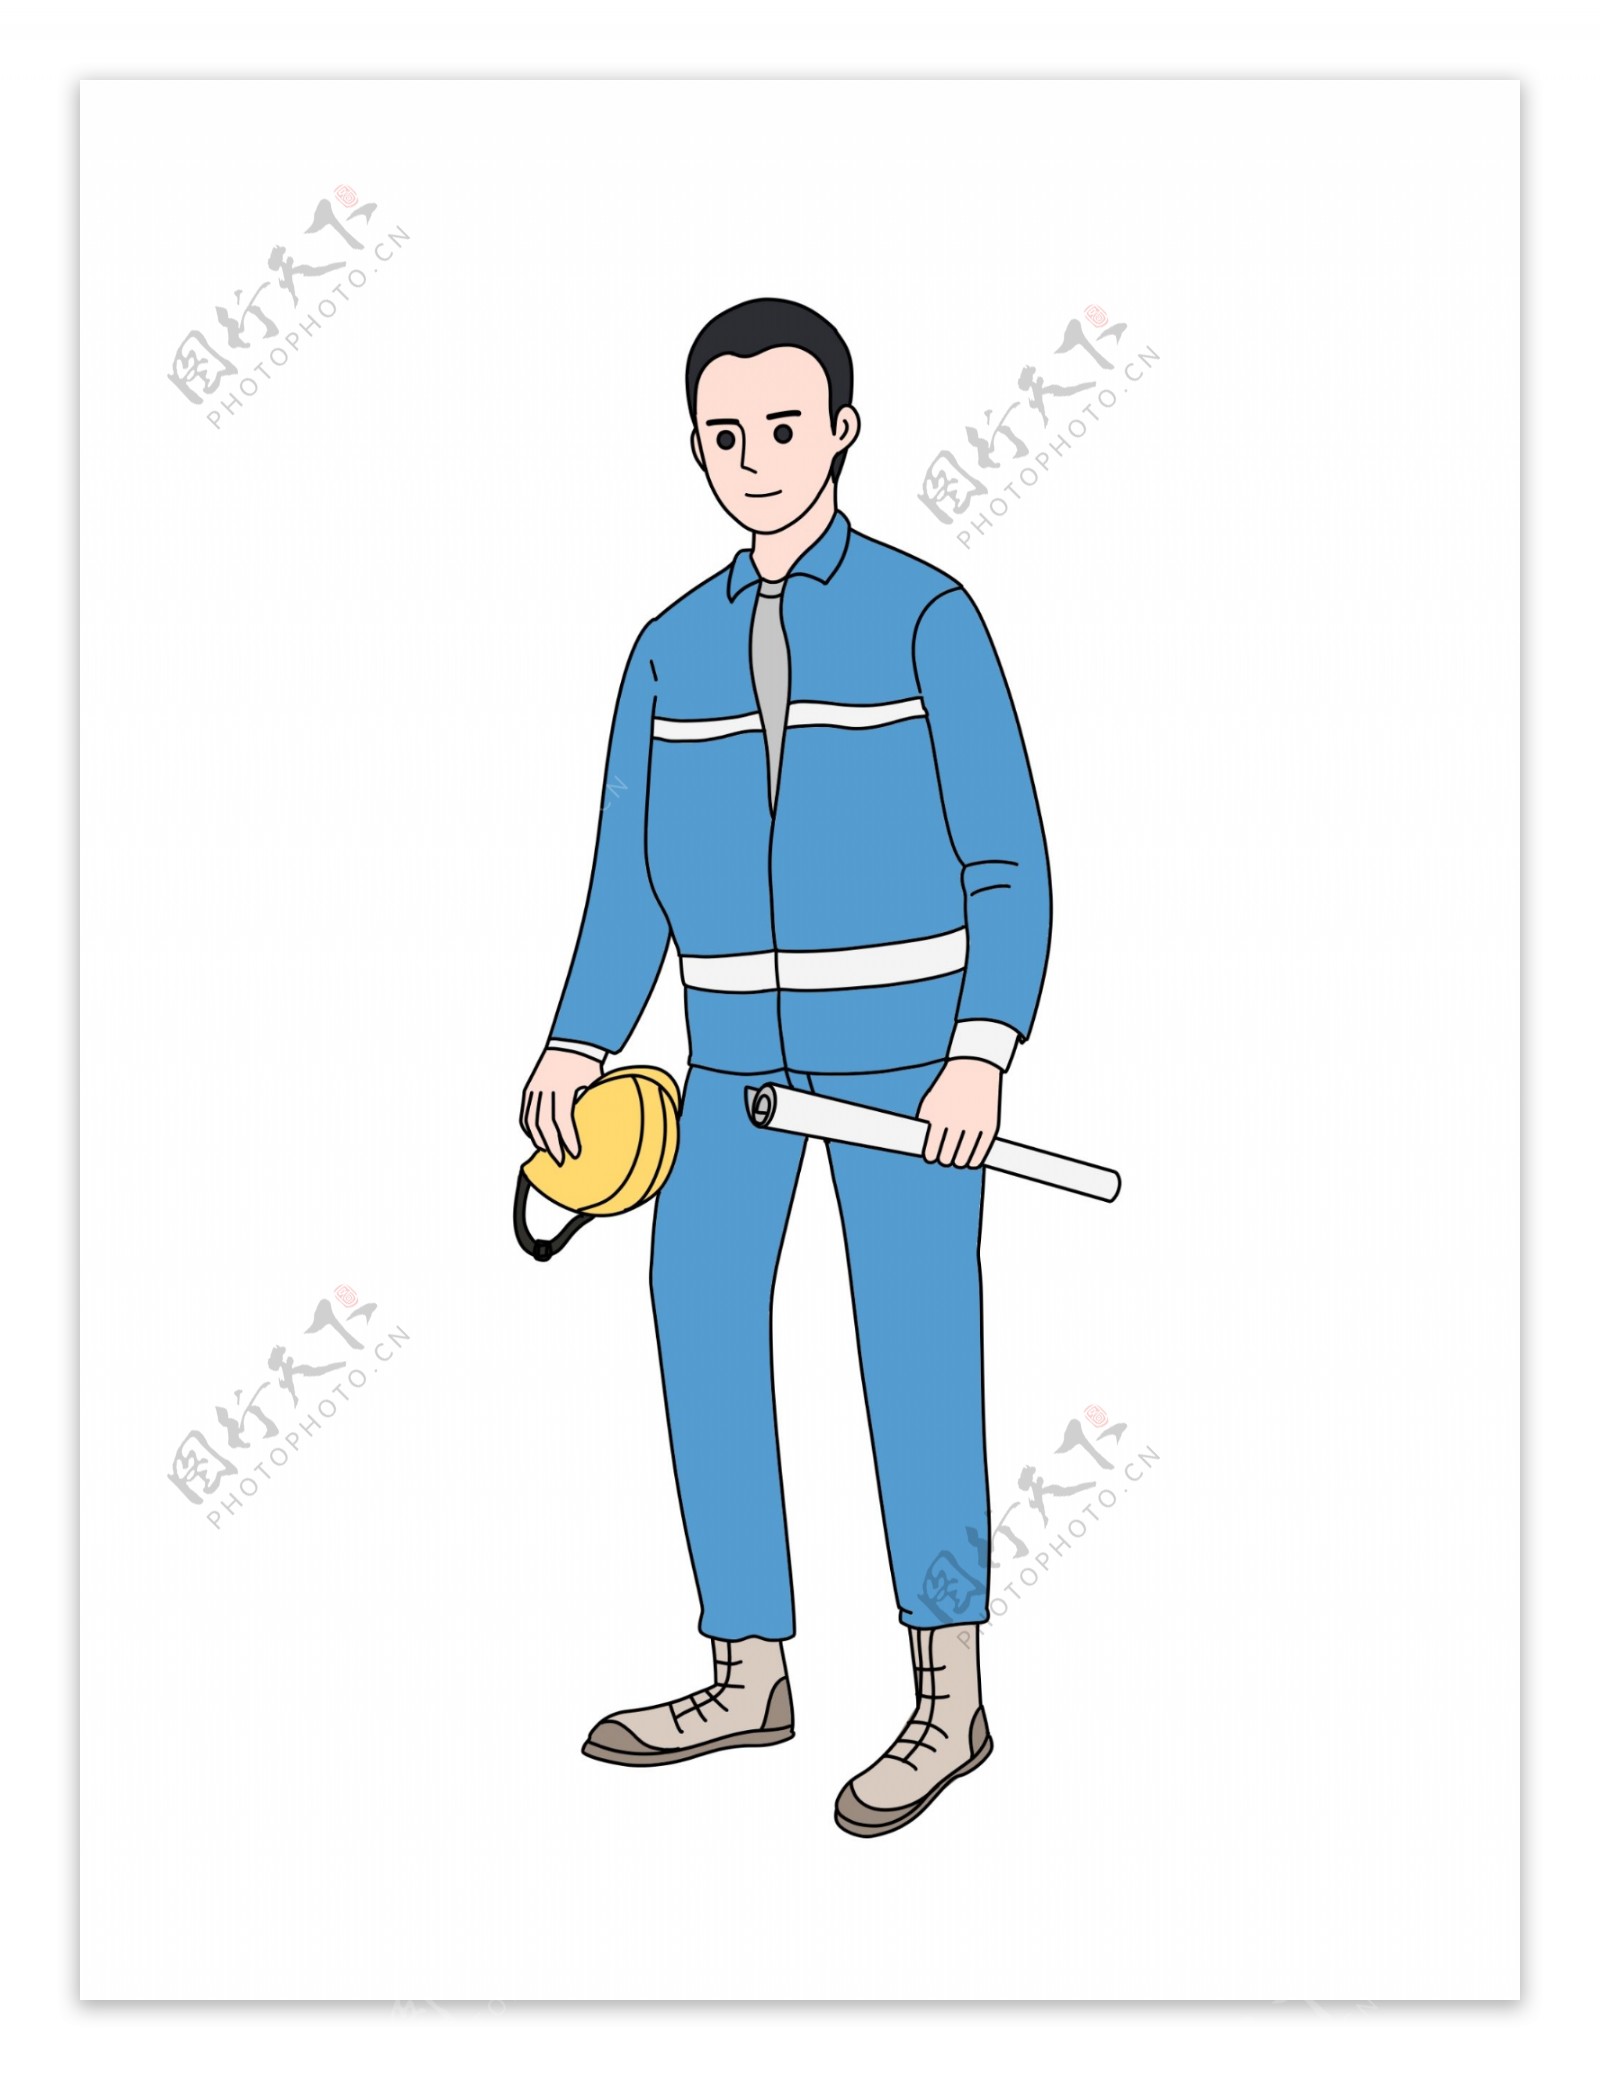 蓝衣服黄帽子的工人插画PNG图片